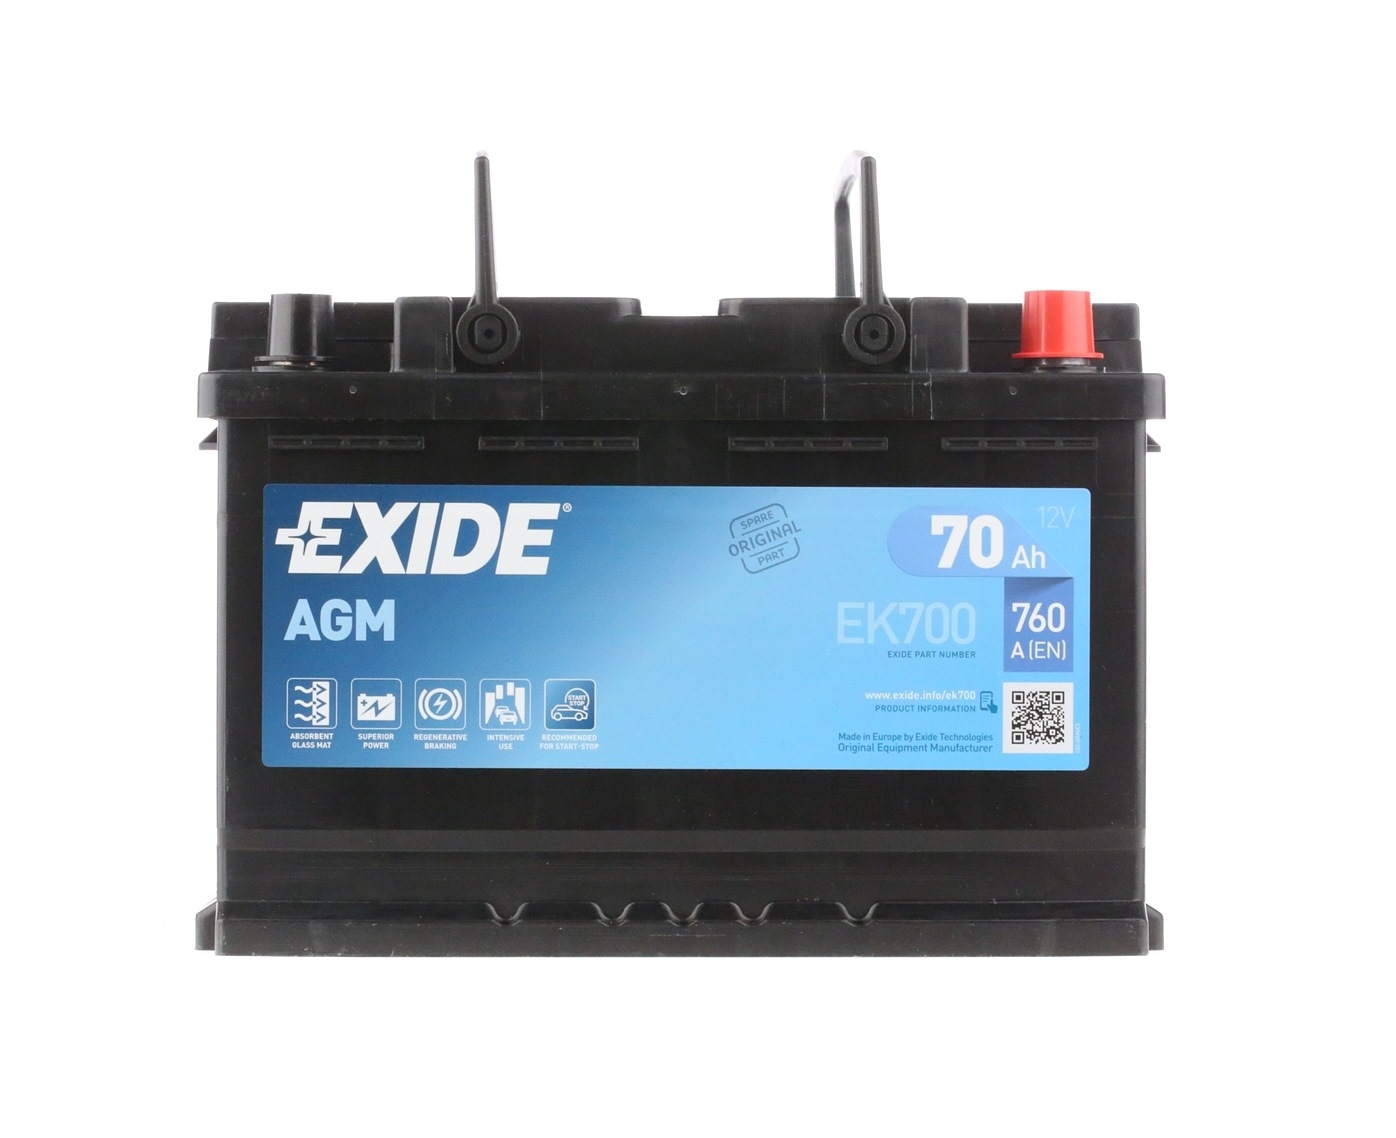 EK700 (067AGM) EXIDE EK700 FORD Autobatterie 12V 70Ah 760A B13 AGM-Batterie